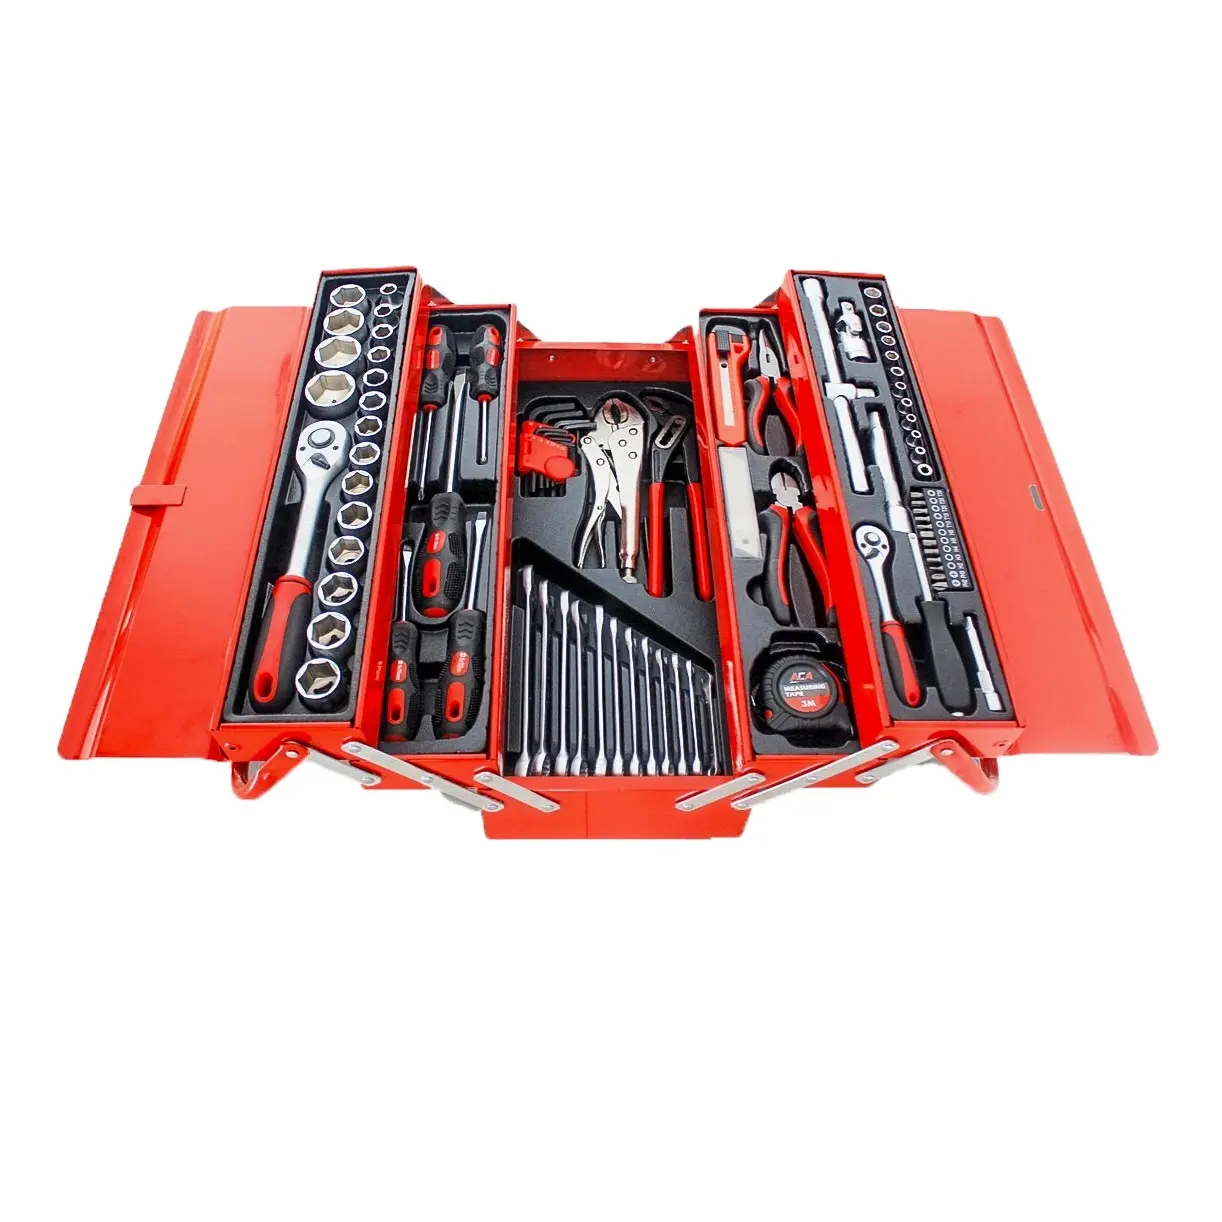 Kit de herramientas profesionales de reparación de automóviles, brazo de hierro, 85 unidades, en caja de herramientas de metal